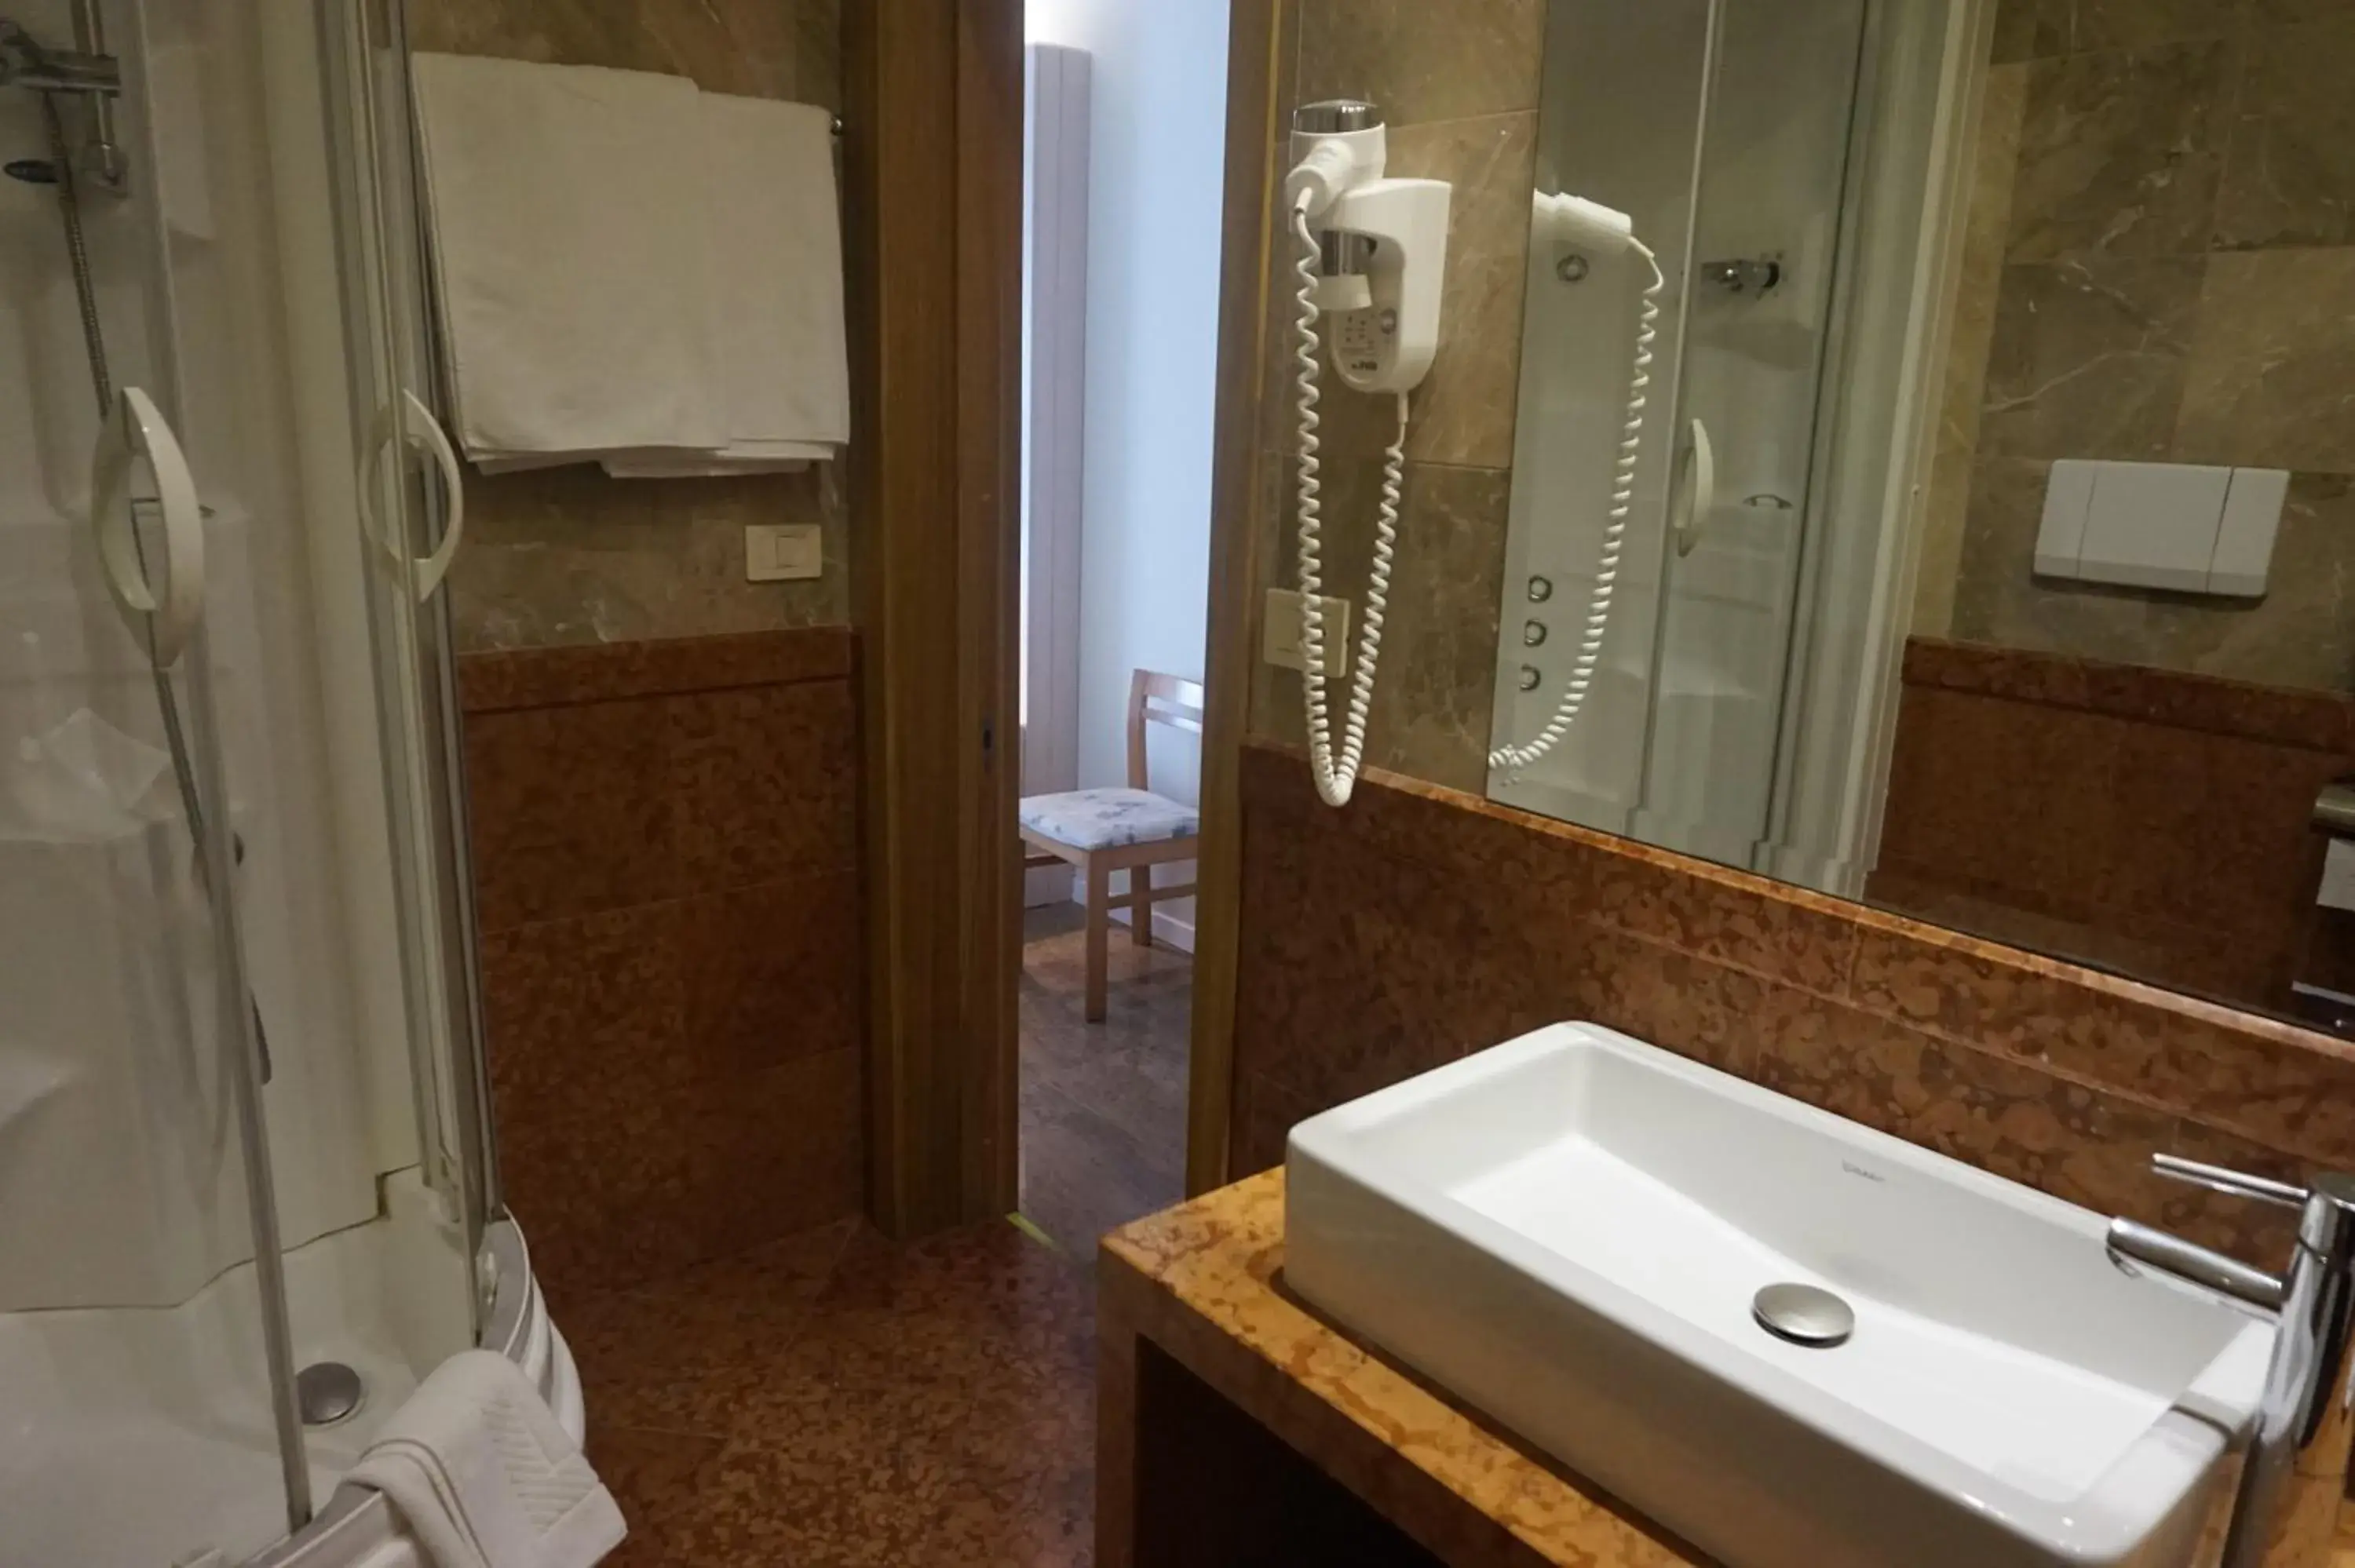 Bathroom in Hotel Columbus